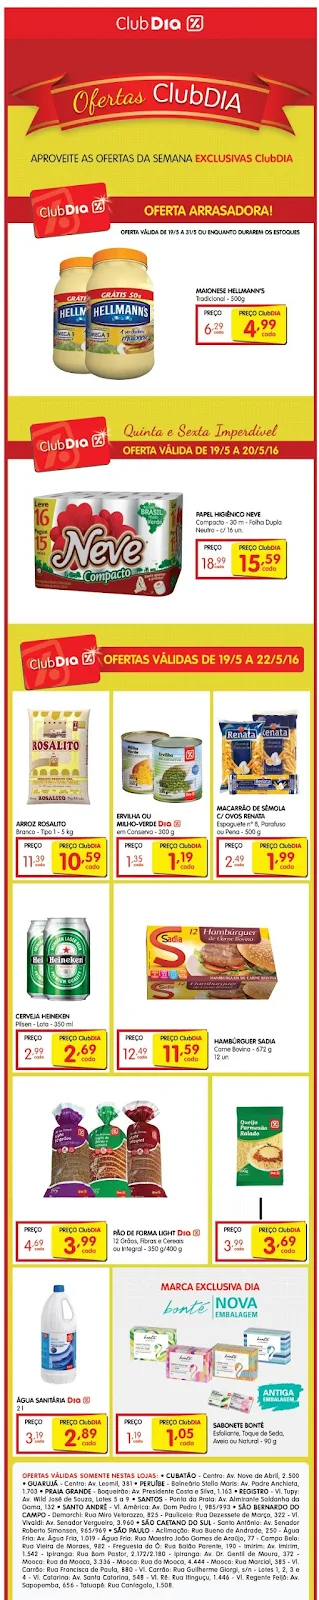 Ofertas ClubDIA Supermercados %Dia, 19 à 22/5